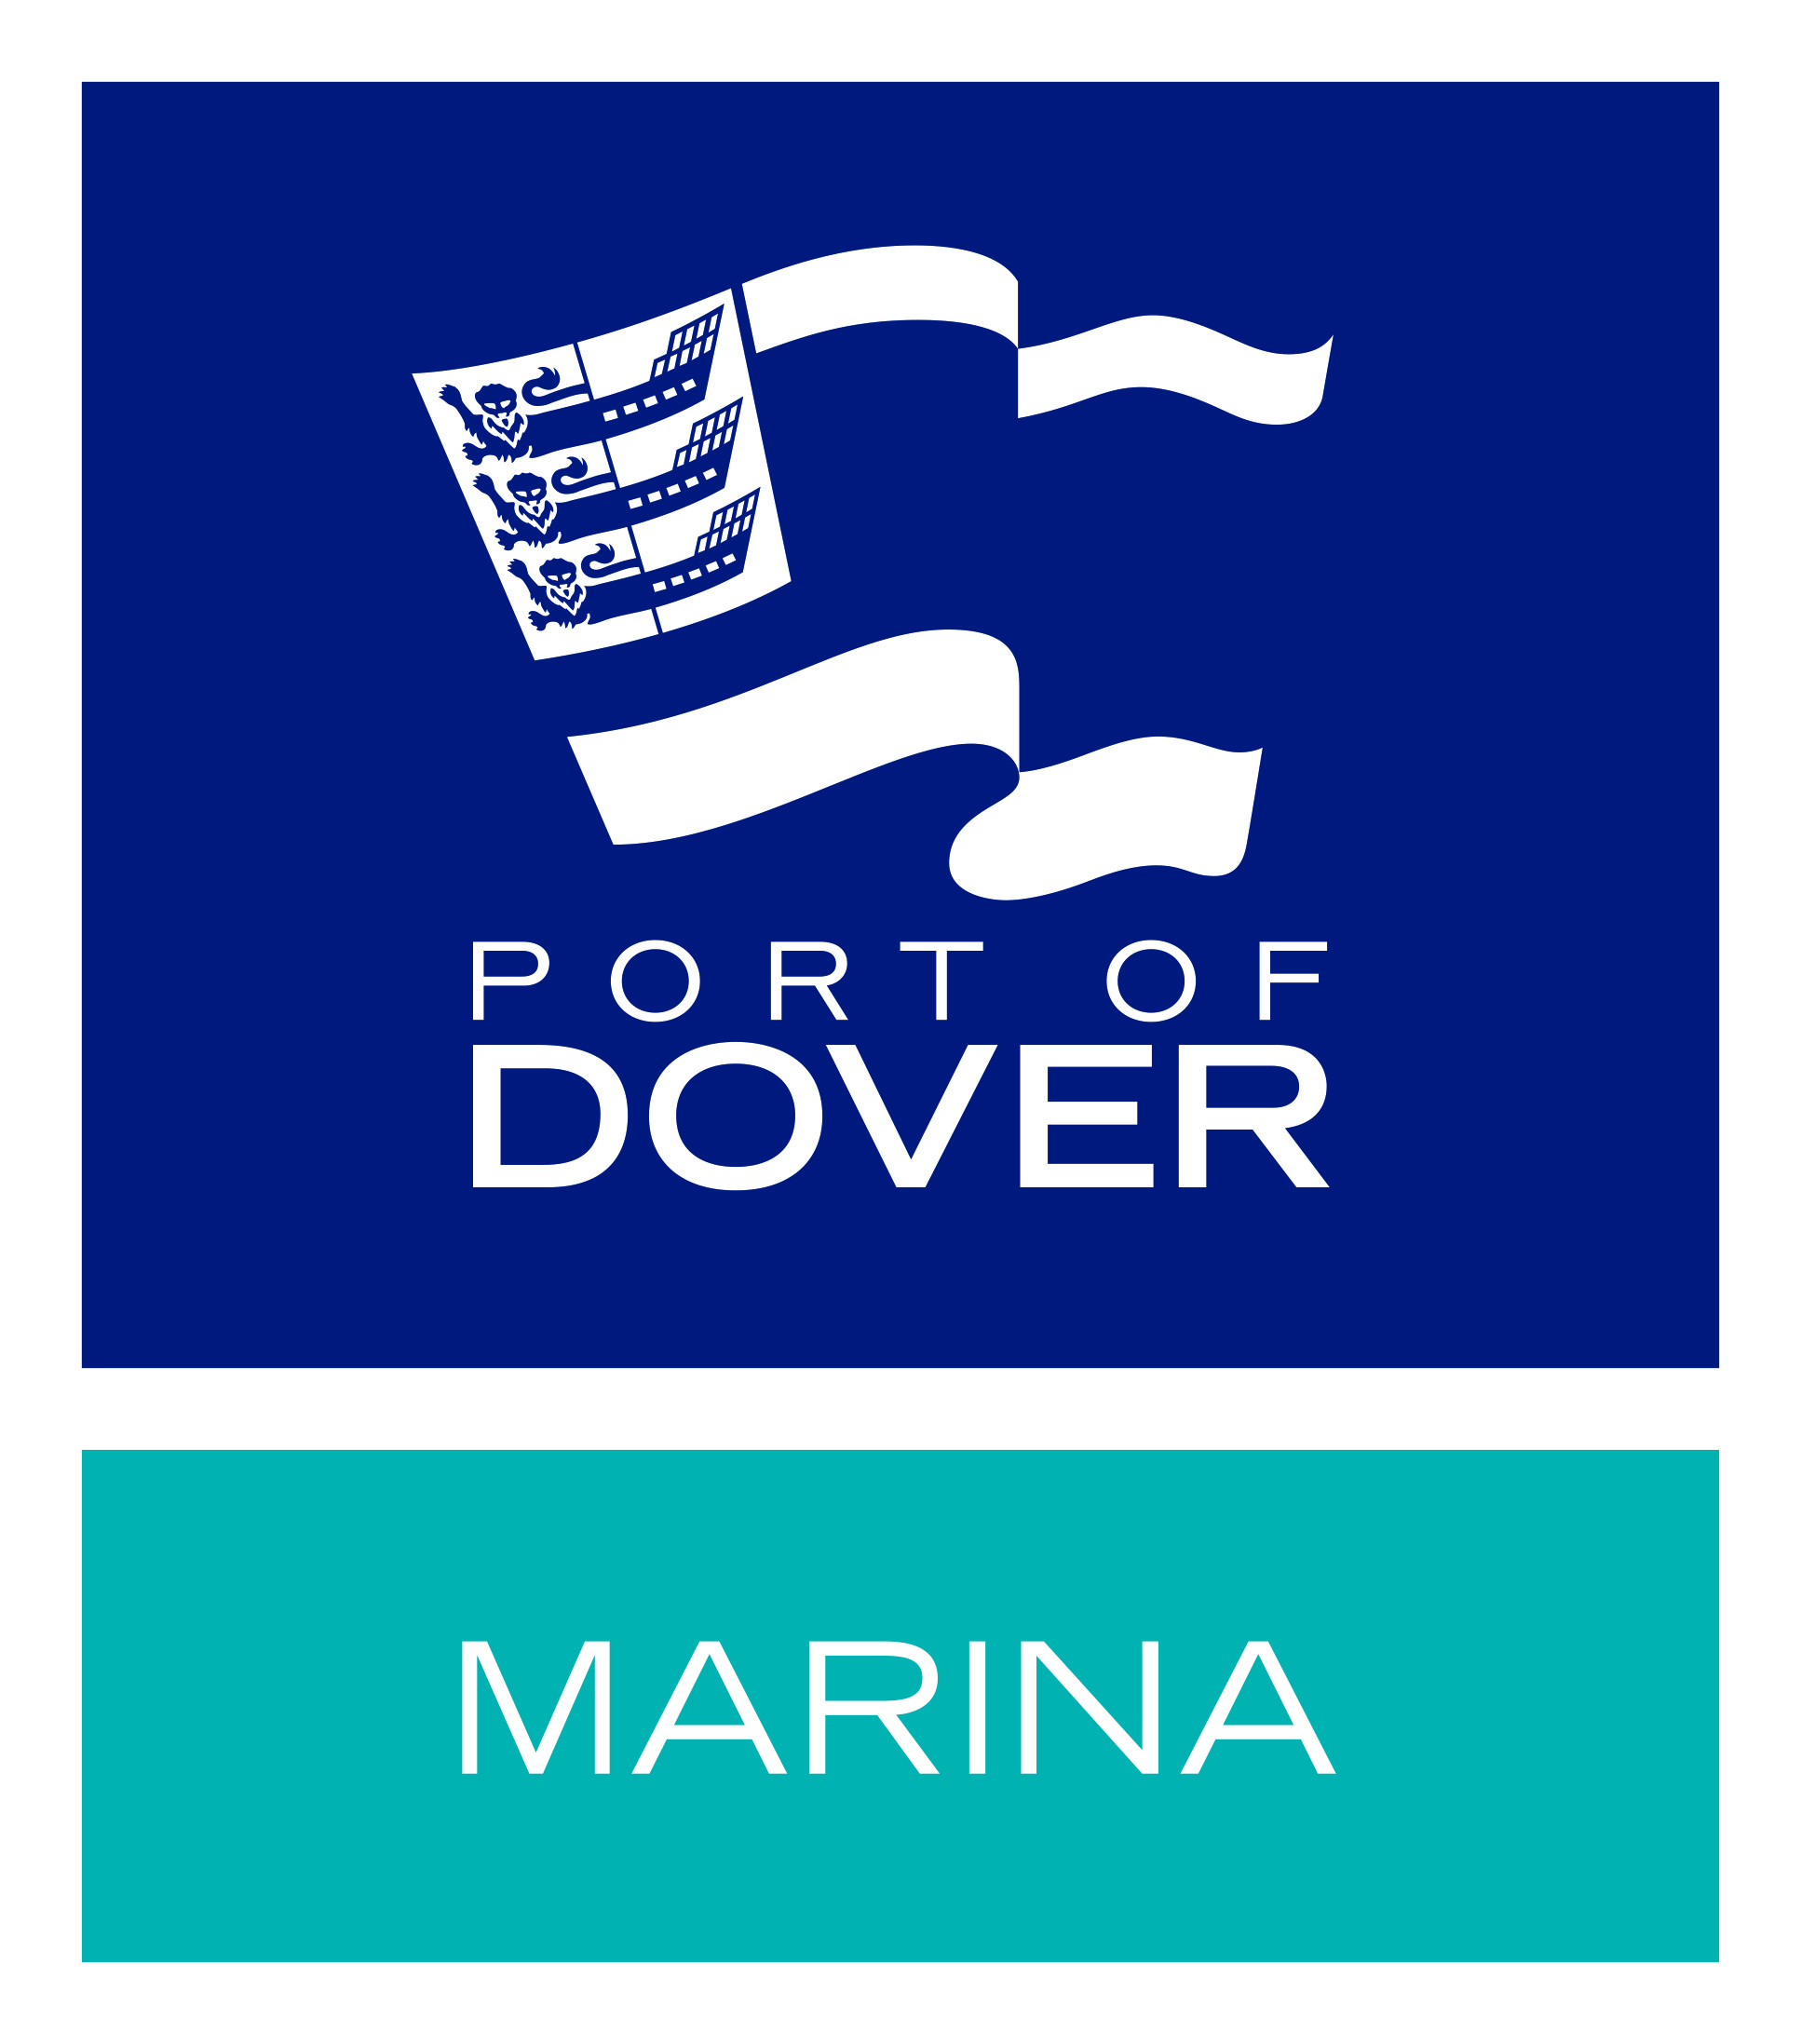 Dover Marina